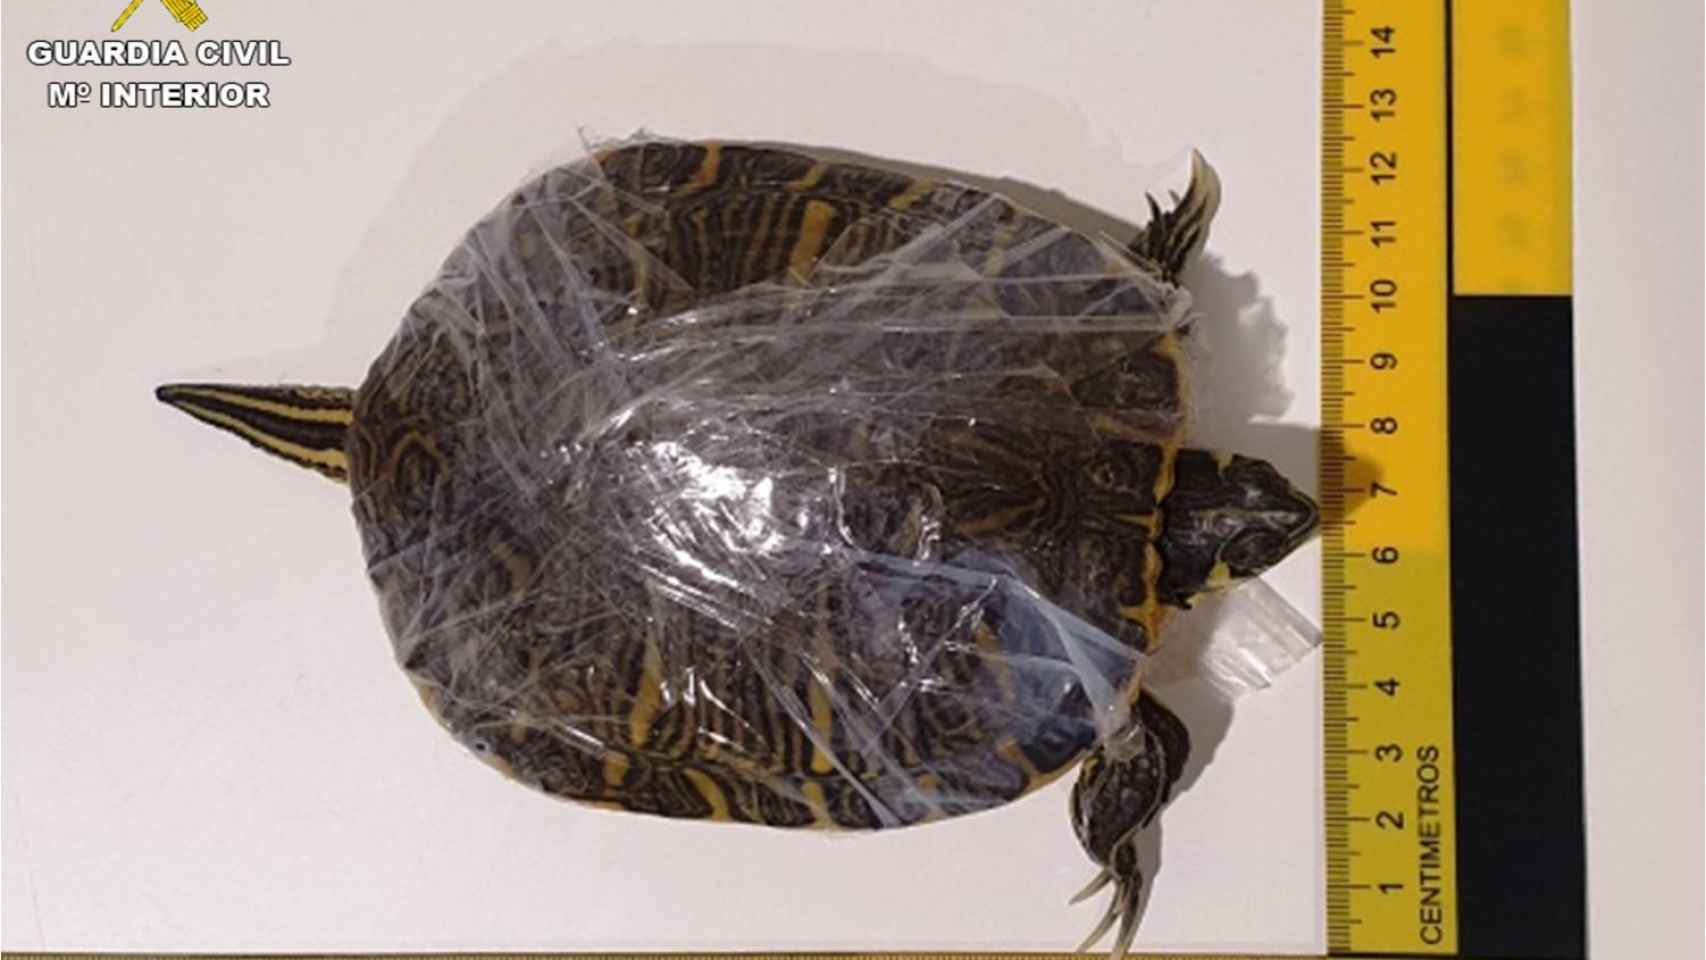 Una de las tortugas envuelta en plástico.